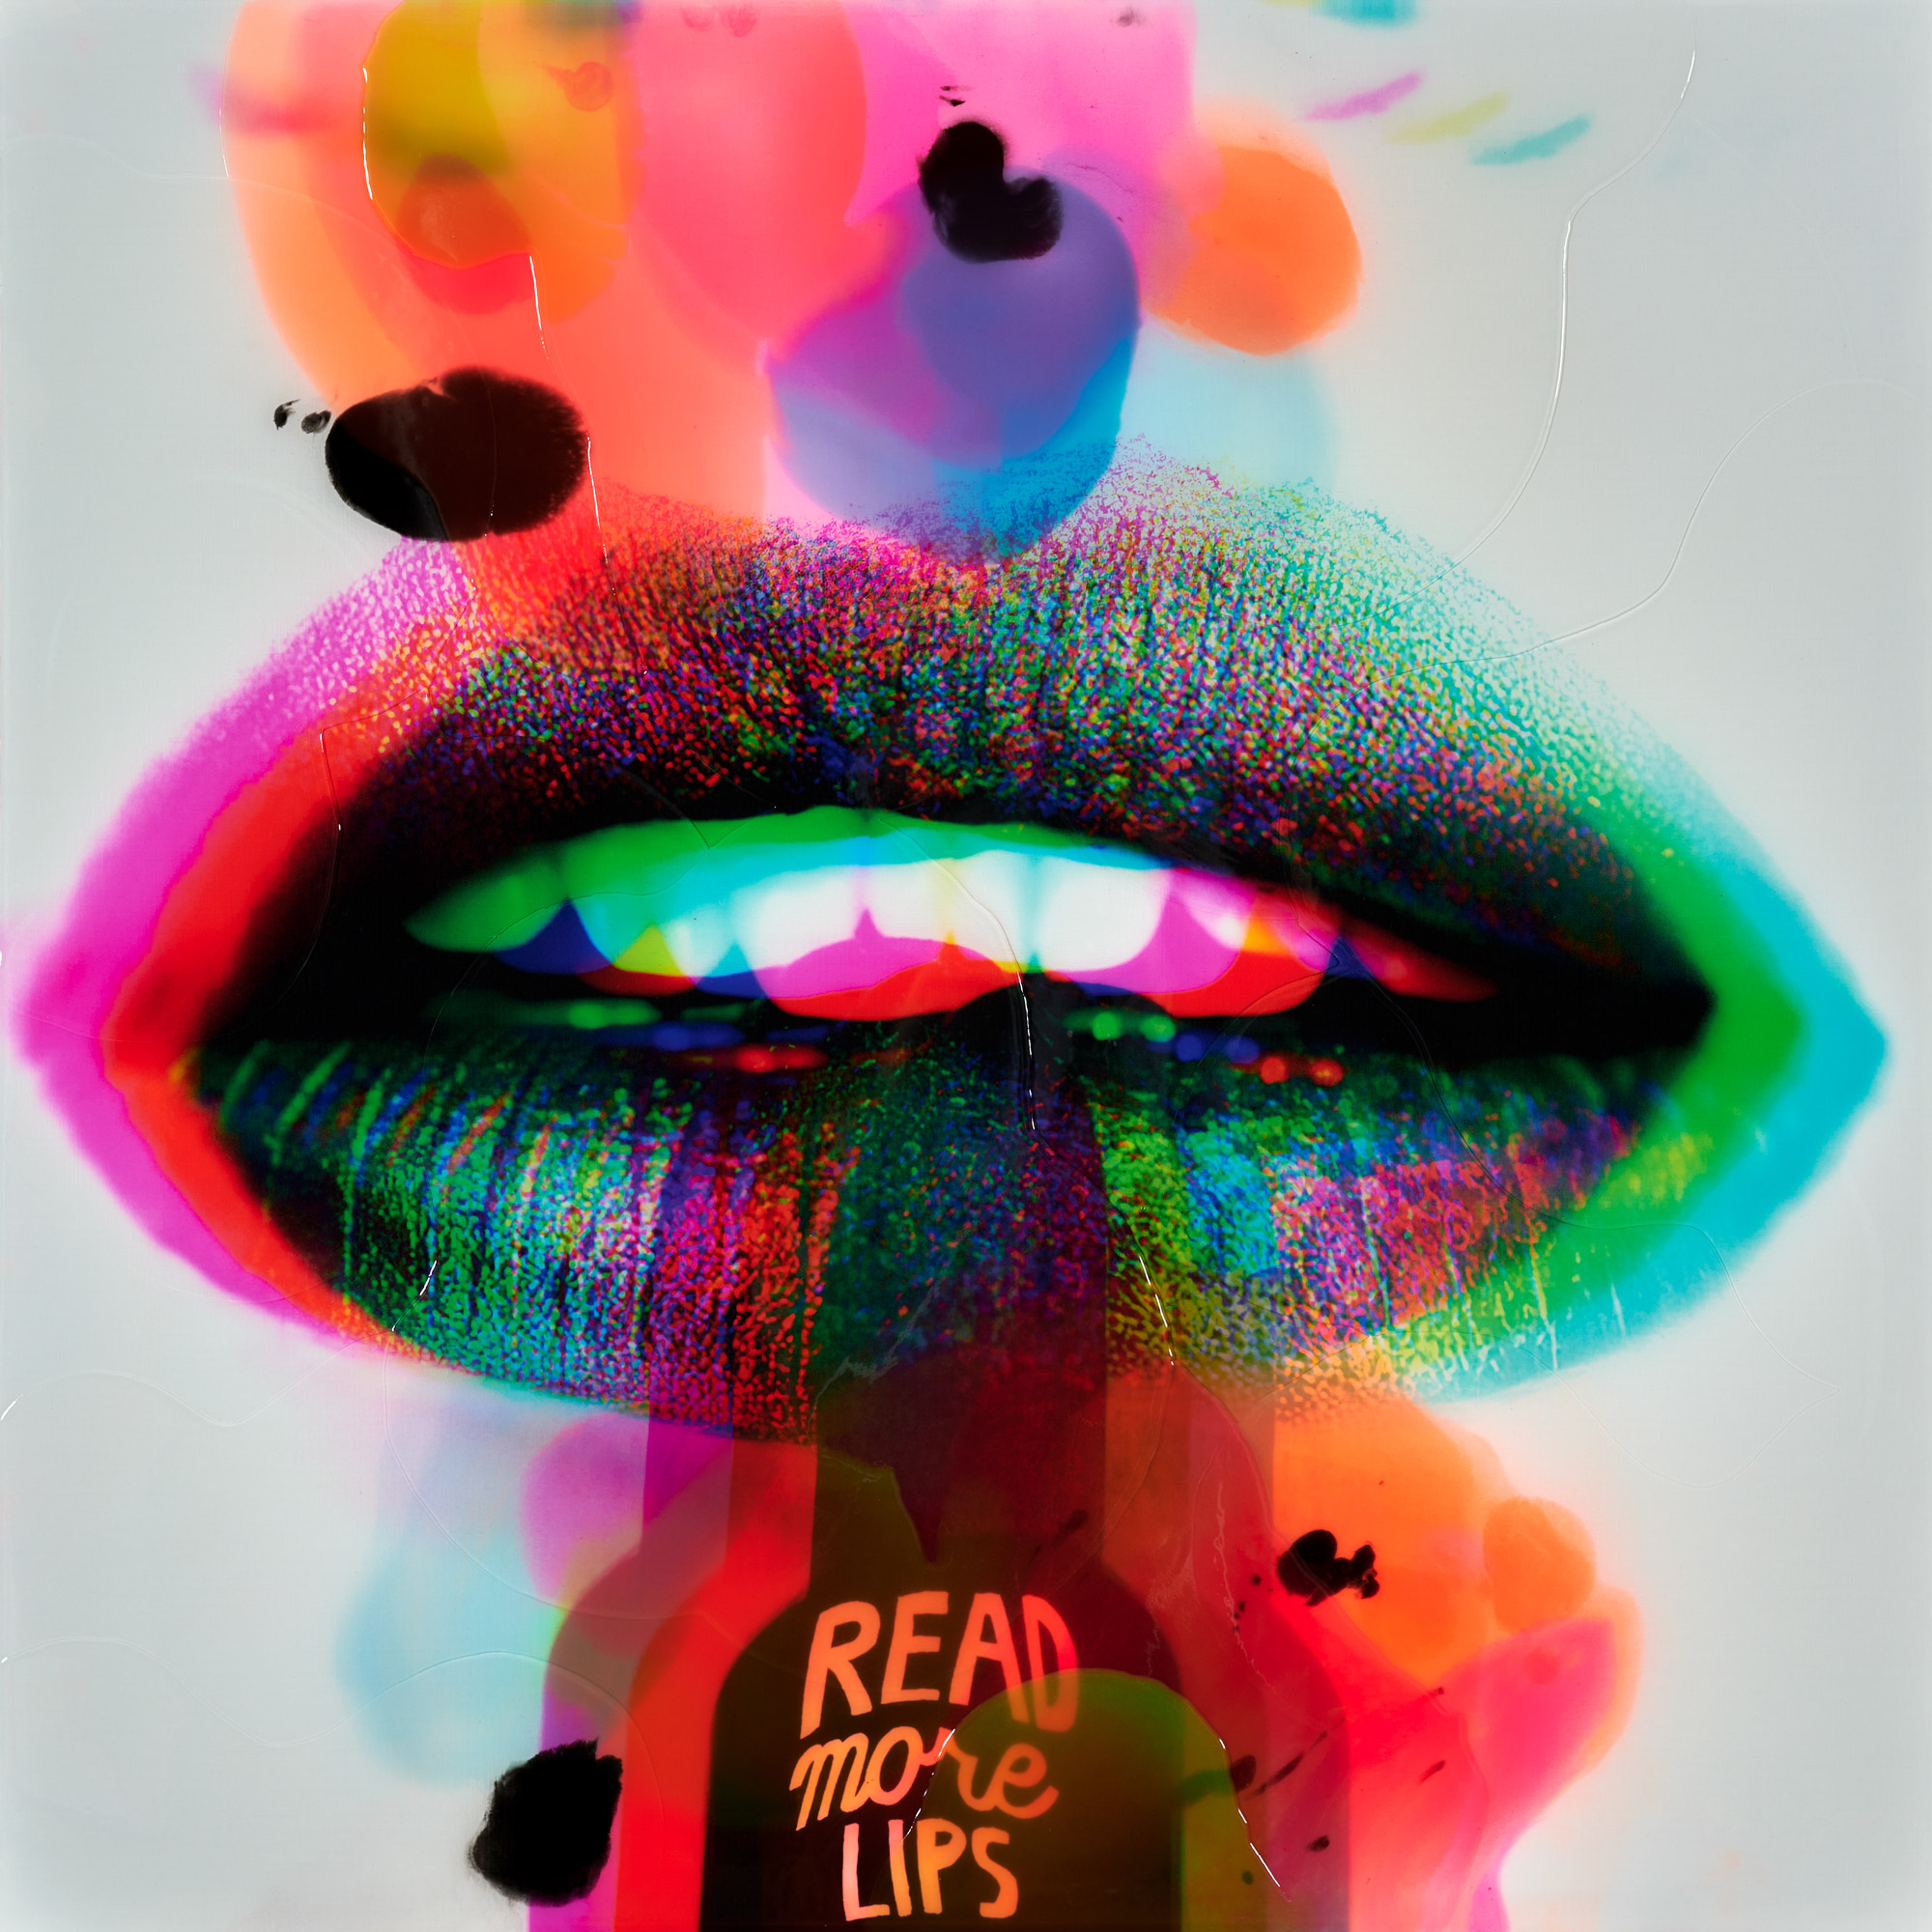 Bild "Read more lips" (2021) von Jörg Döring